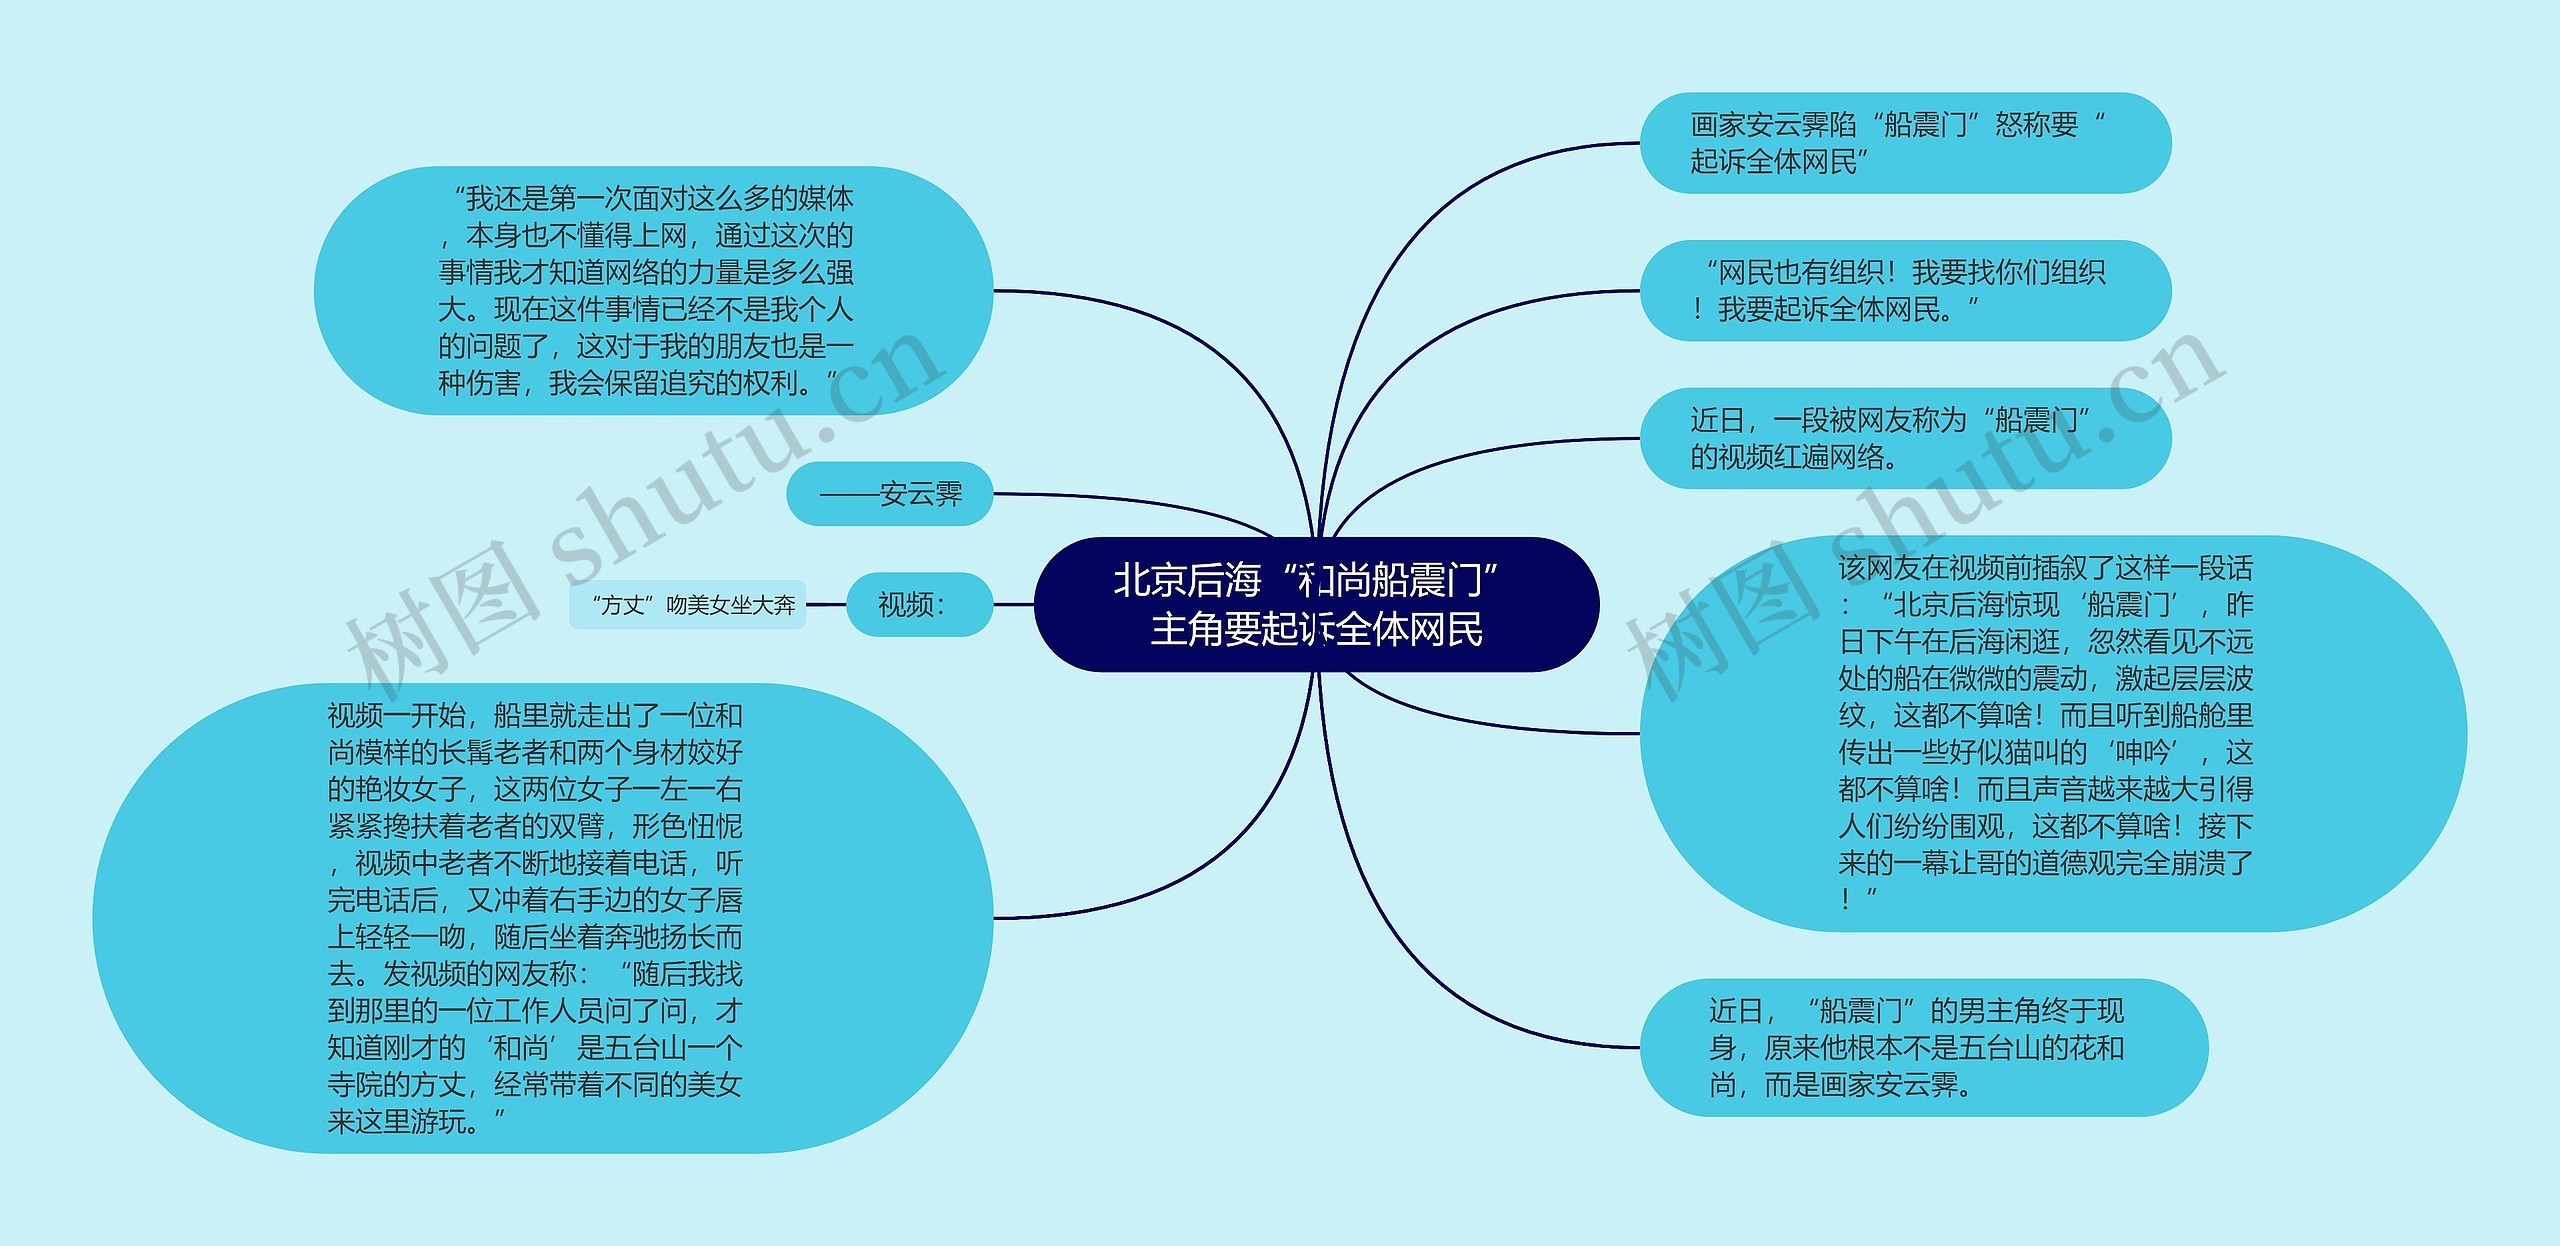 北京后海“和尚船震门”主角要起诉全体网民思维导图